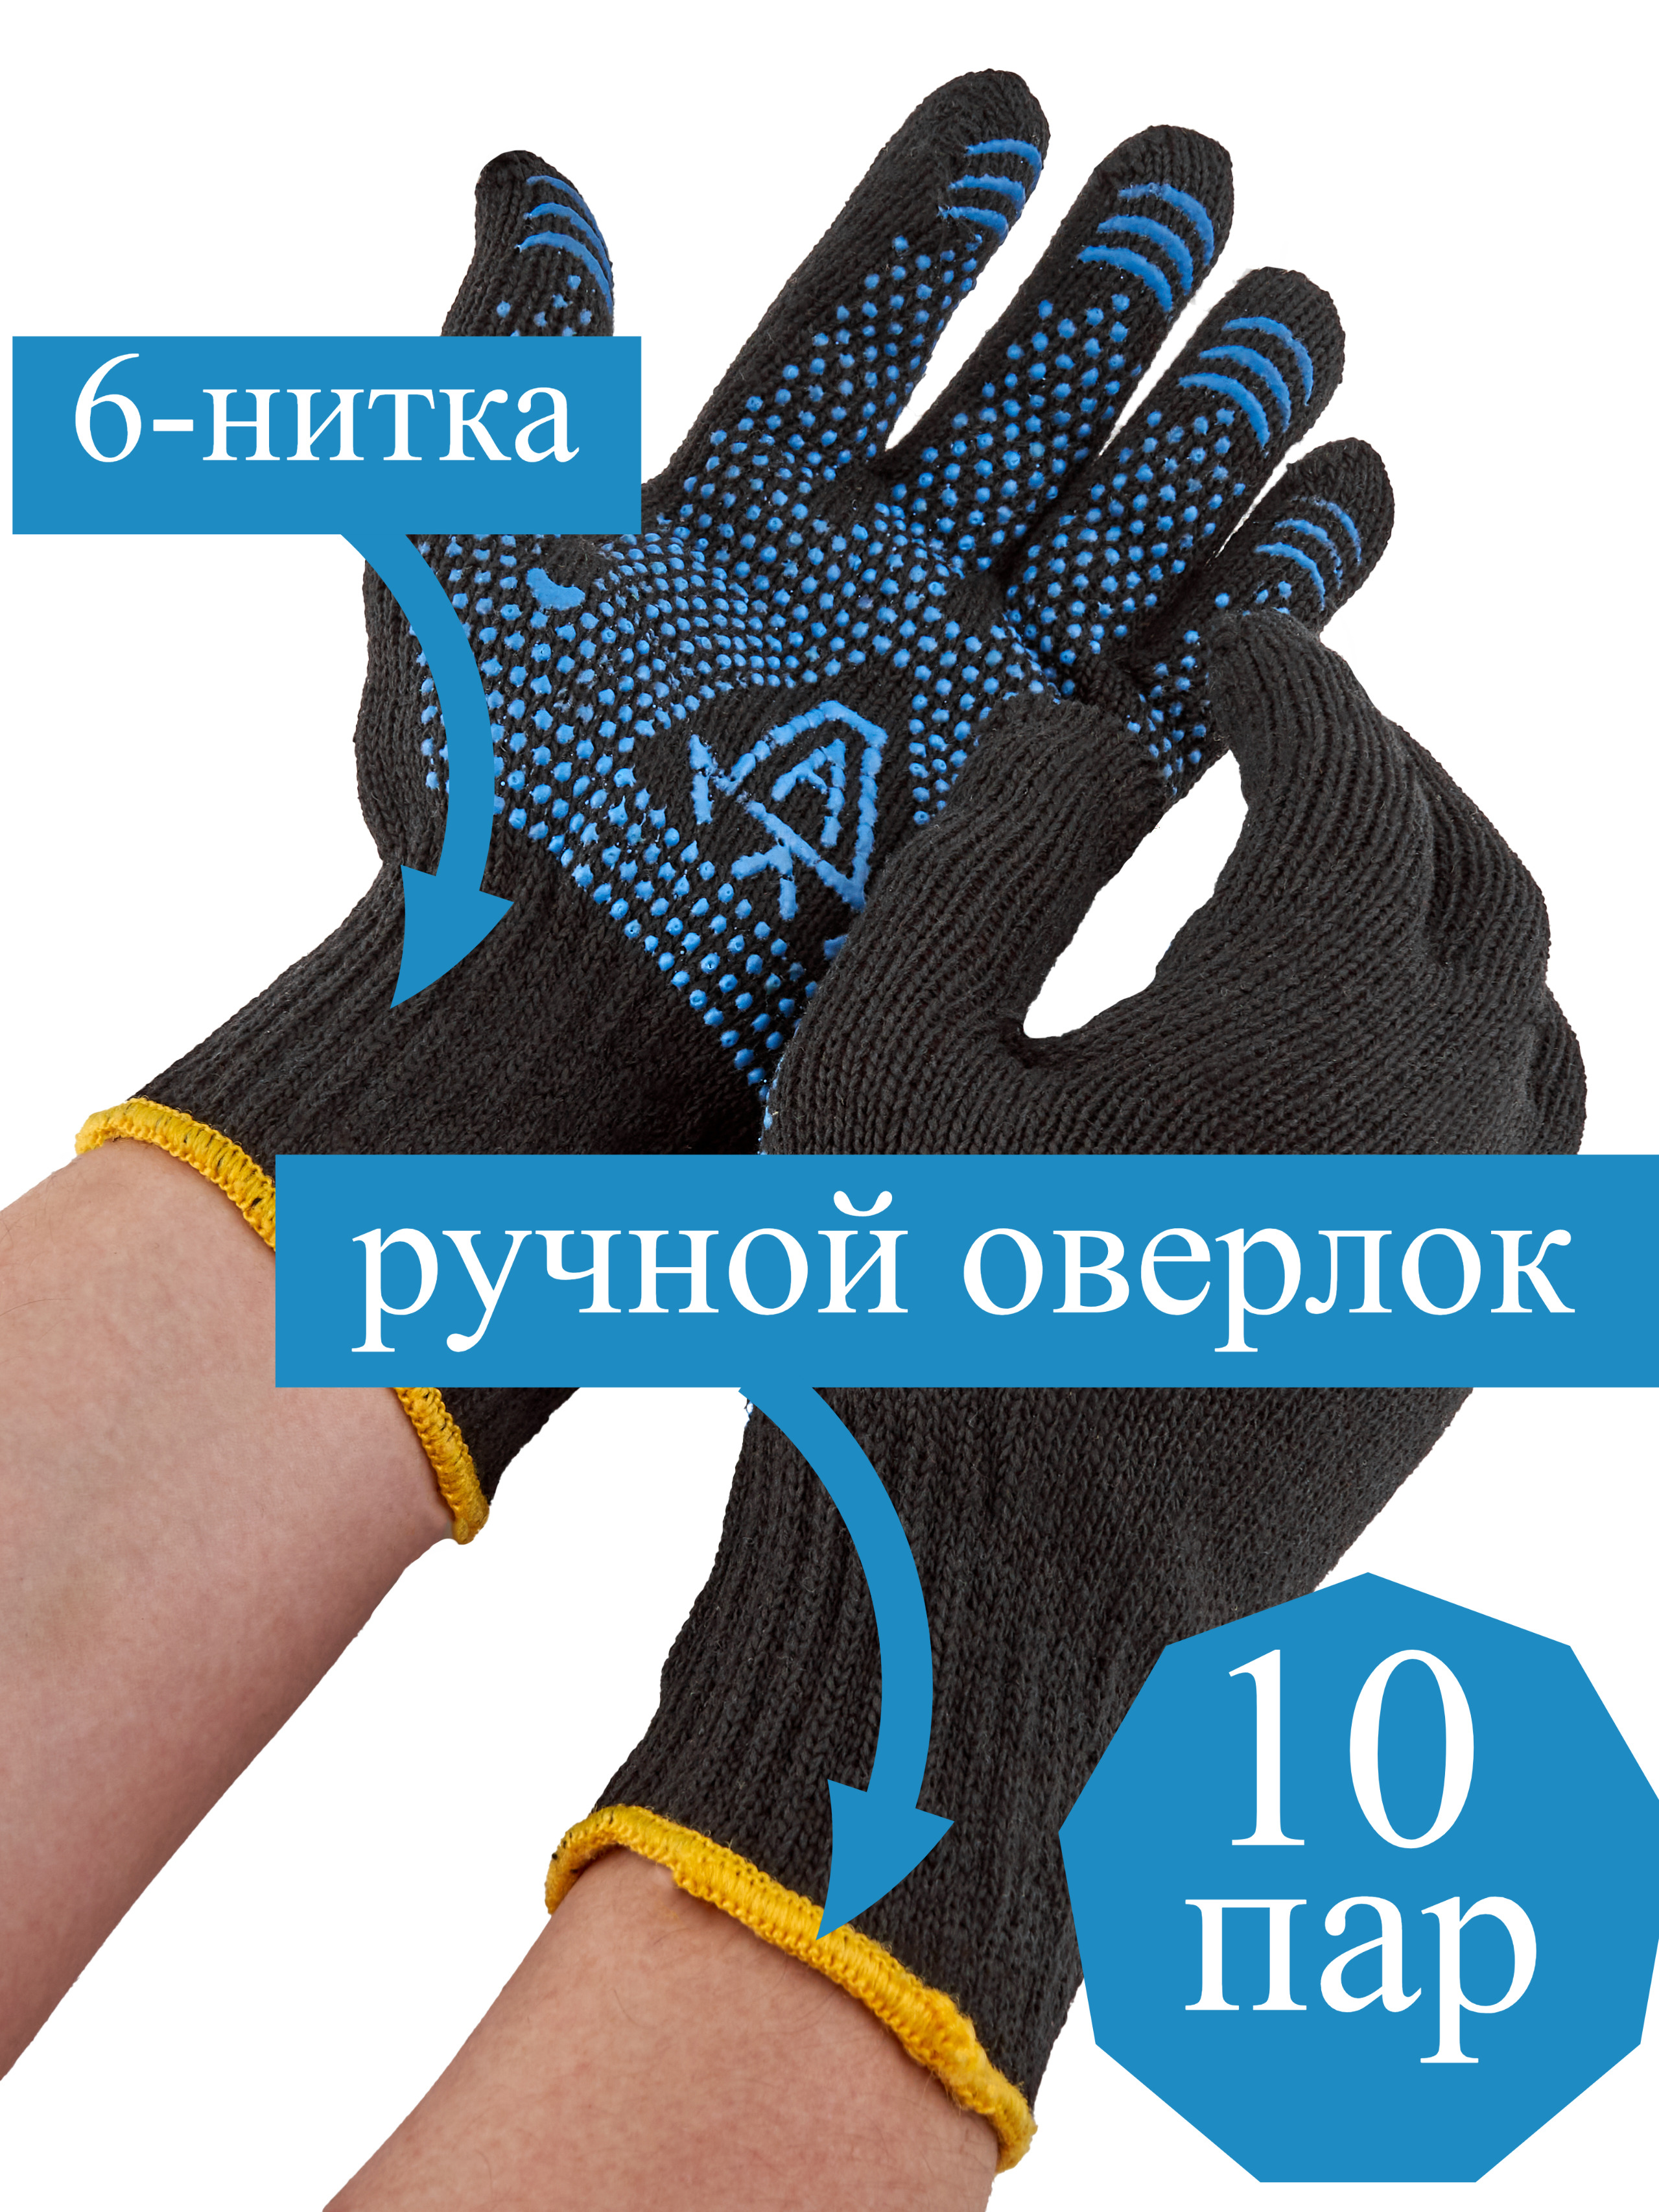 Перчатки L&G рабочие прочные хб с пвх, хозяйственные, 10 пар рабочие трикотажные перчатки jeta safety